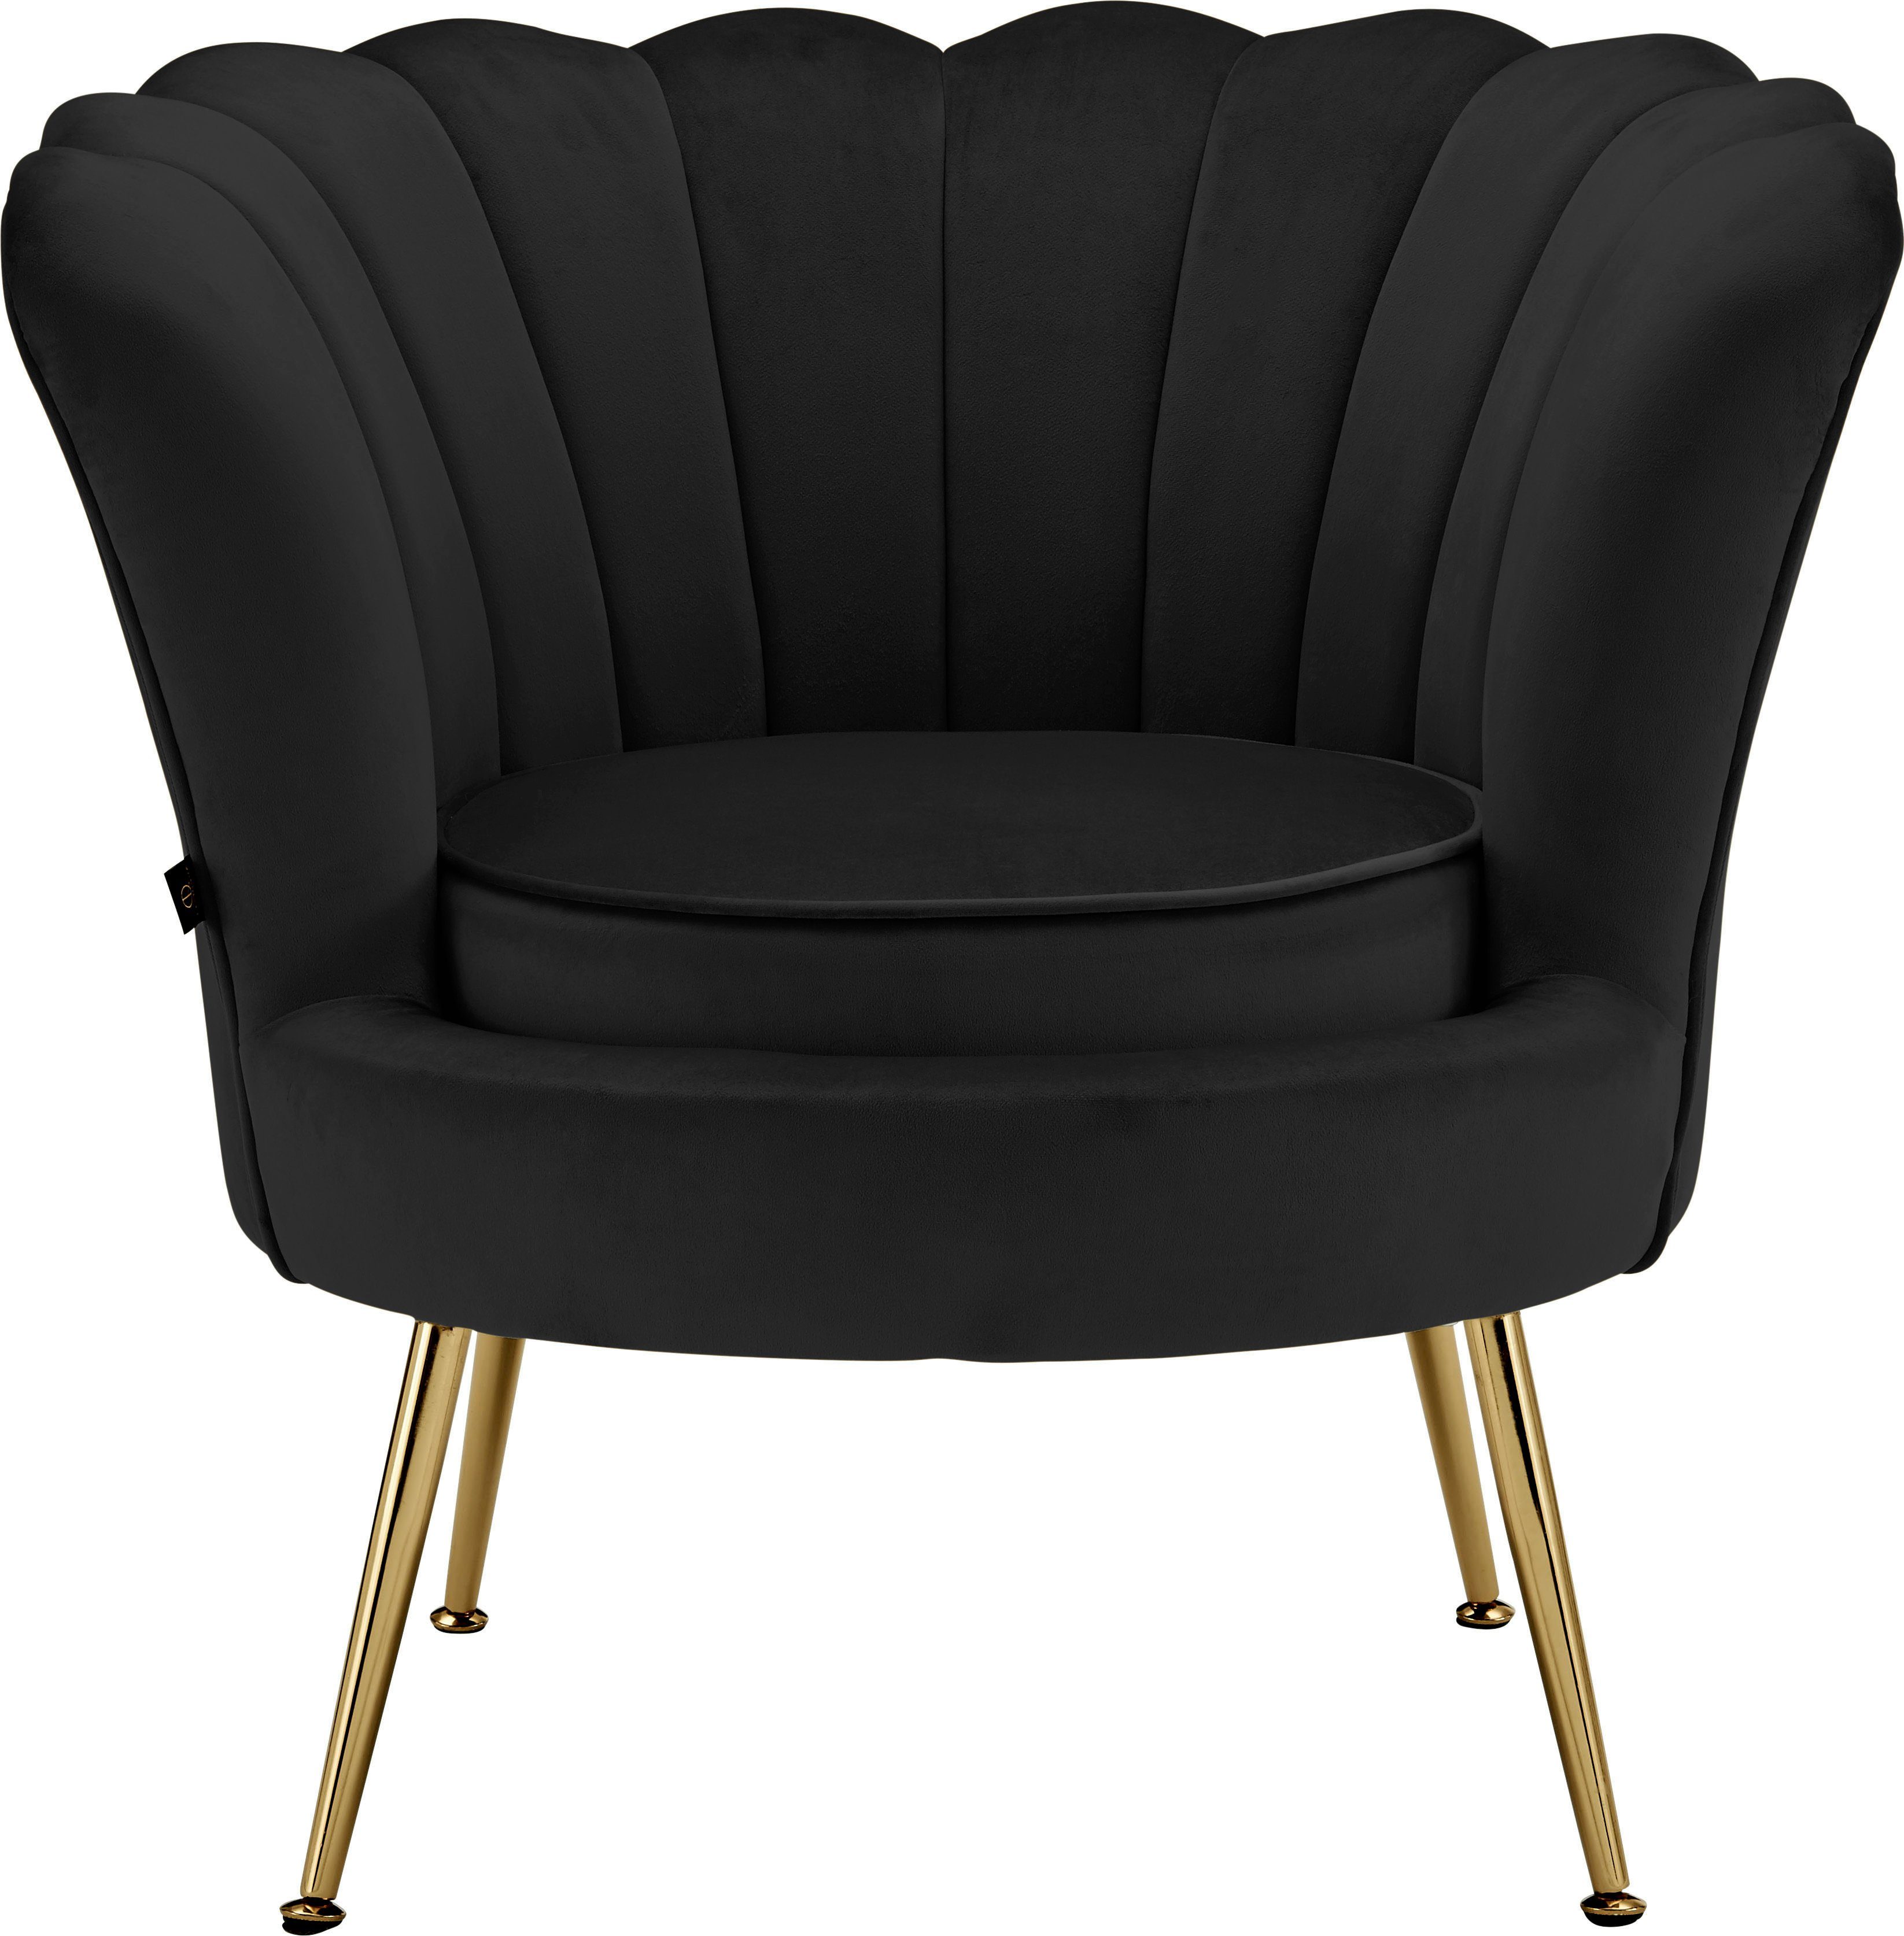 Metallgestell, Leonique Loungesessel mit Sitzhöhe Samtvelours cm 43,5 Kelsey, schwarz Bezug, weichen edlem